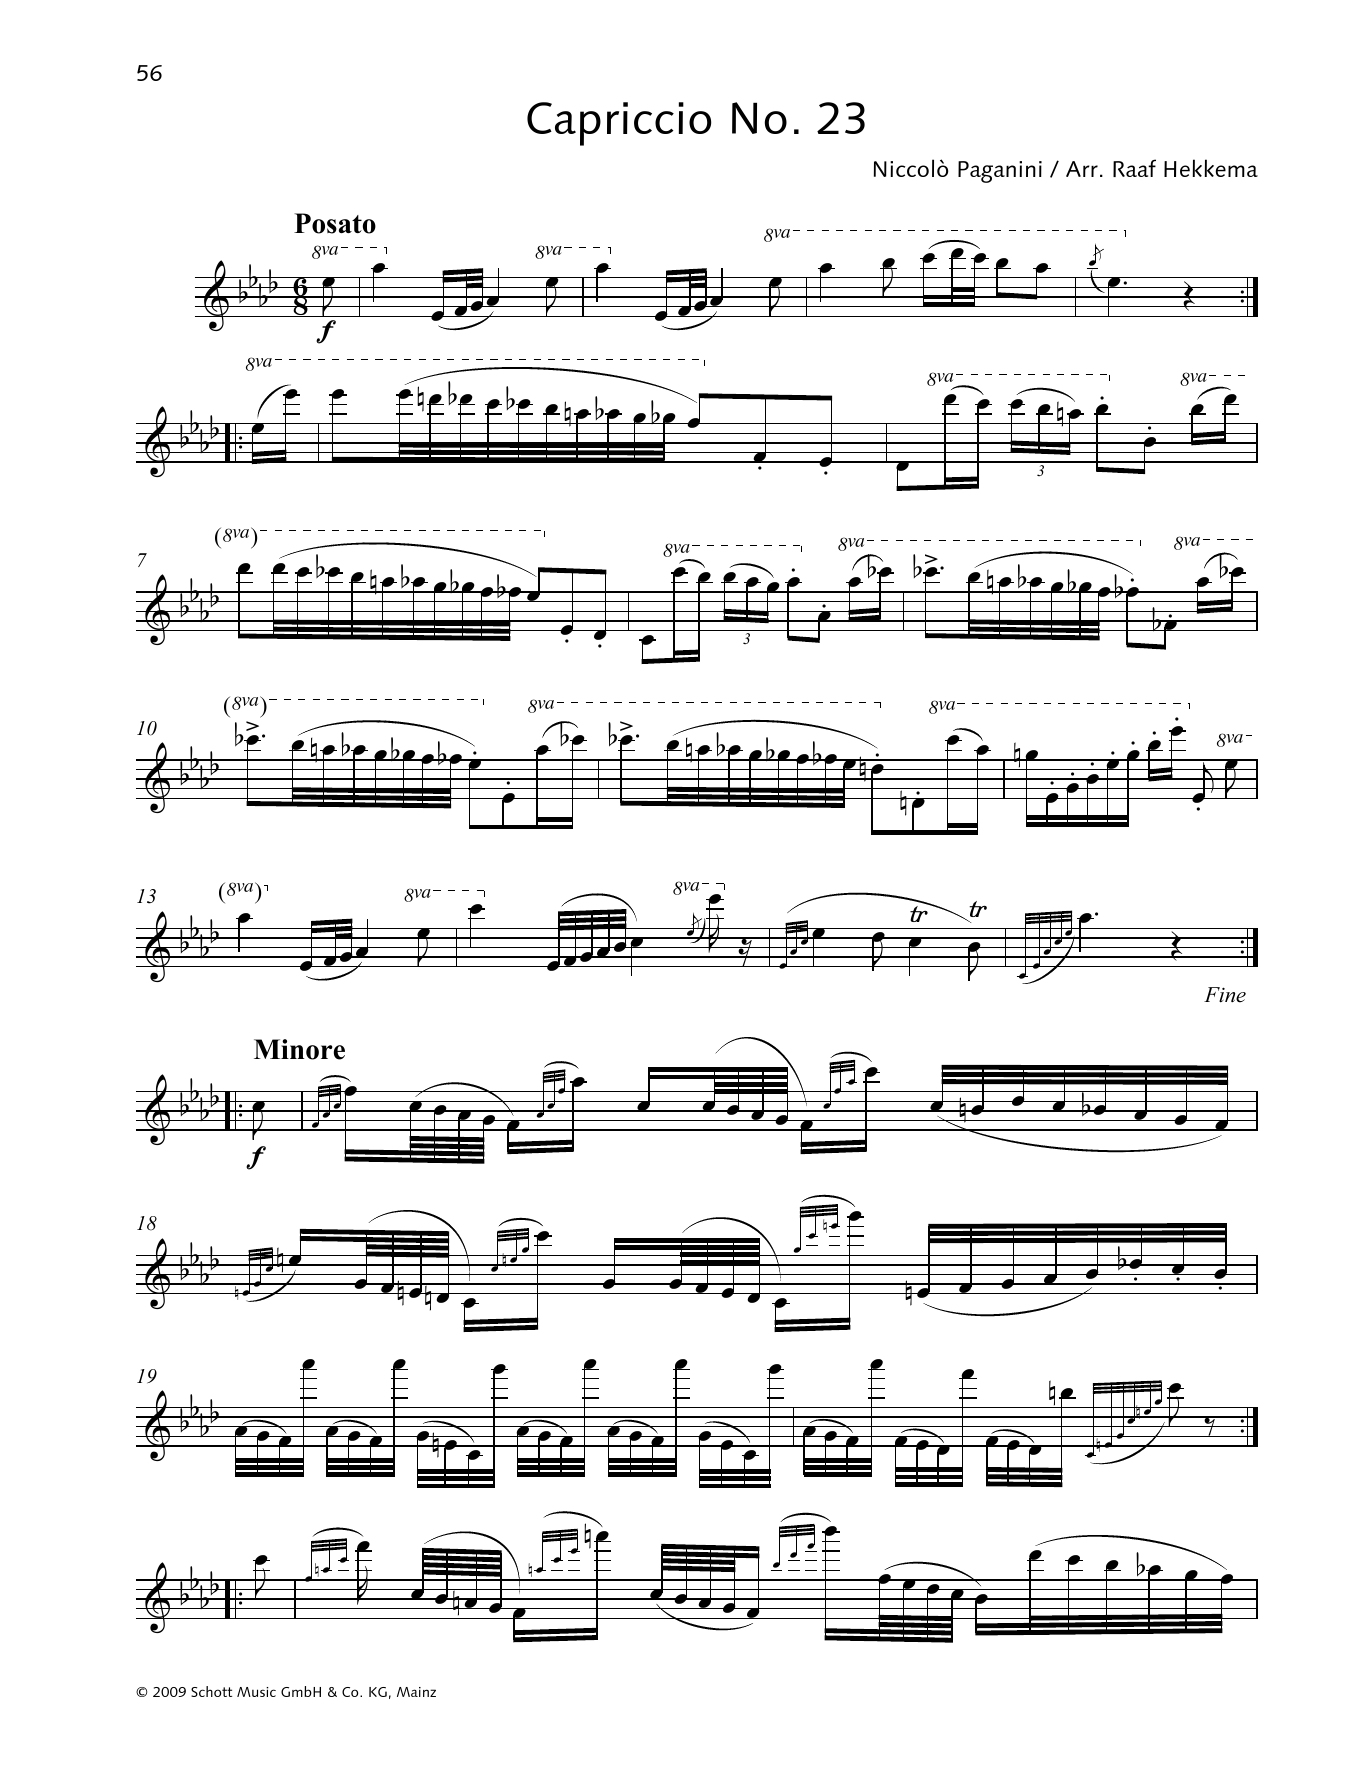 Download Niccolo Paganini Capriccio No. 23 Sheet Music